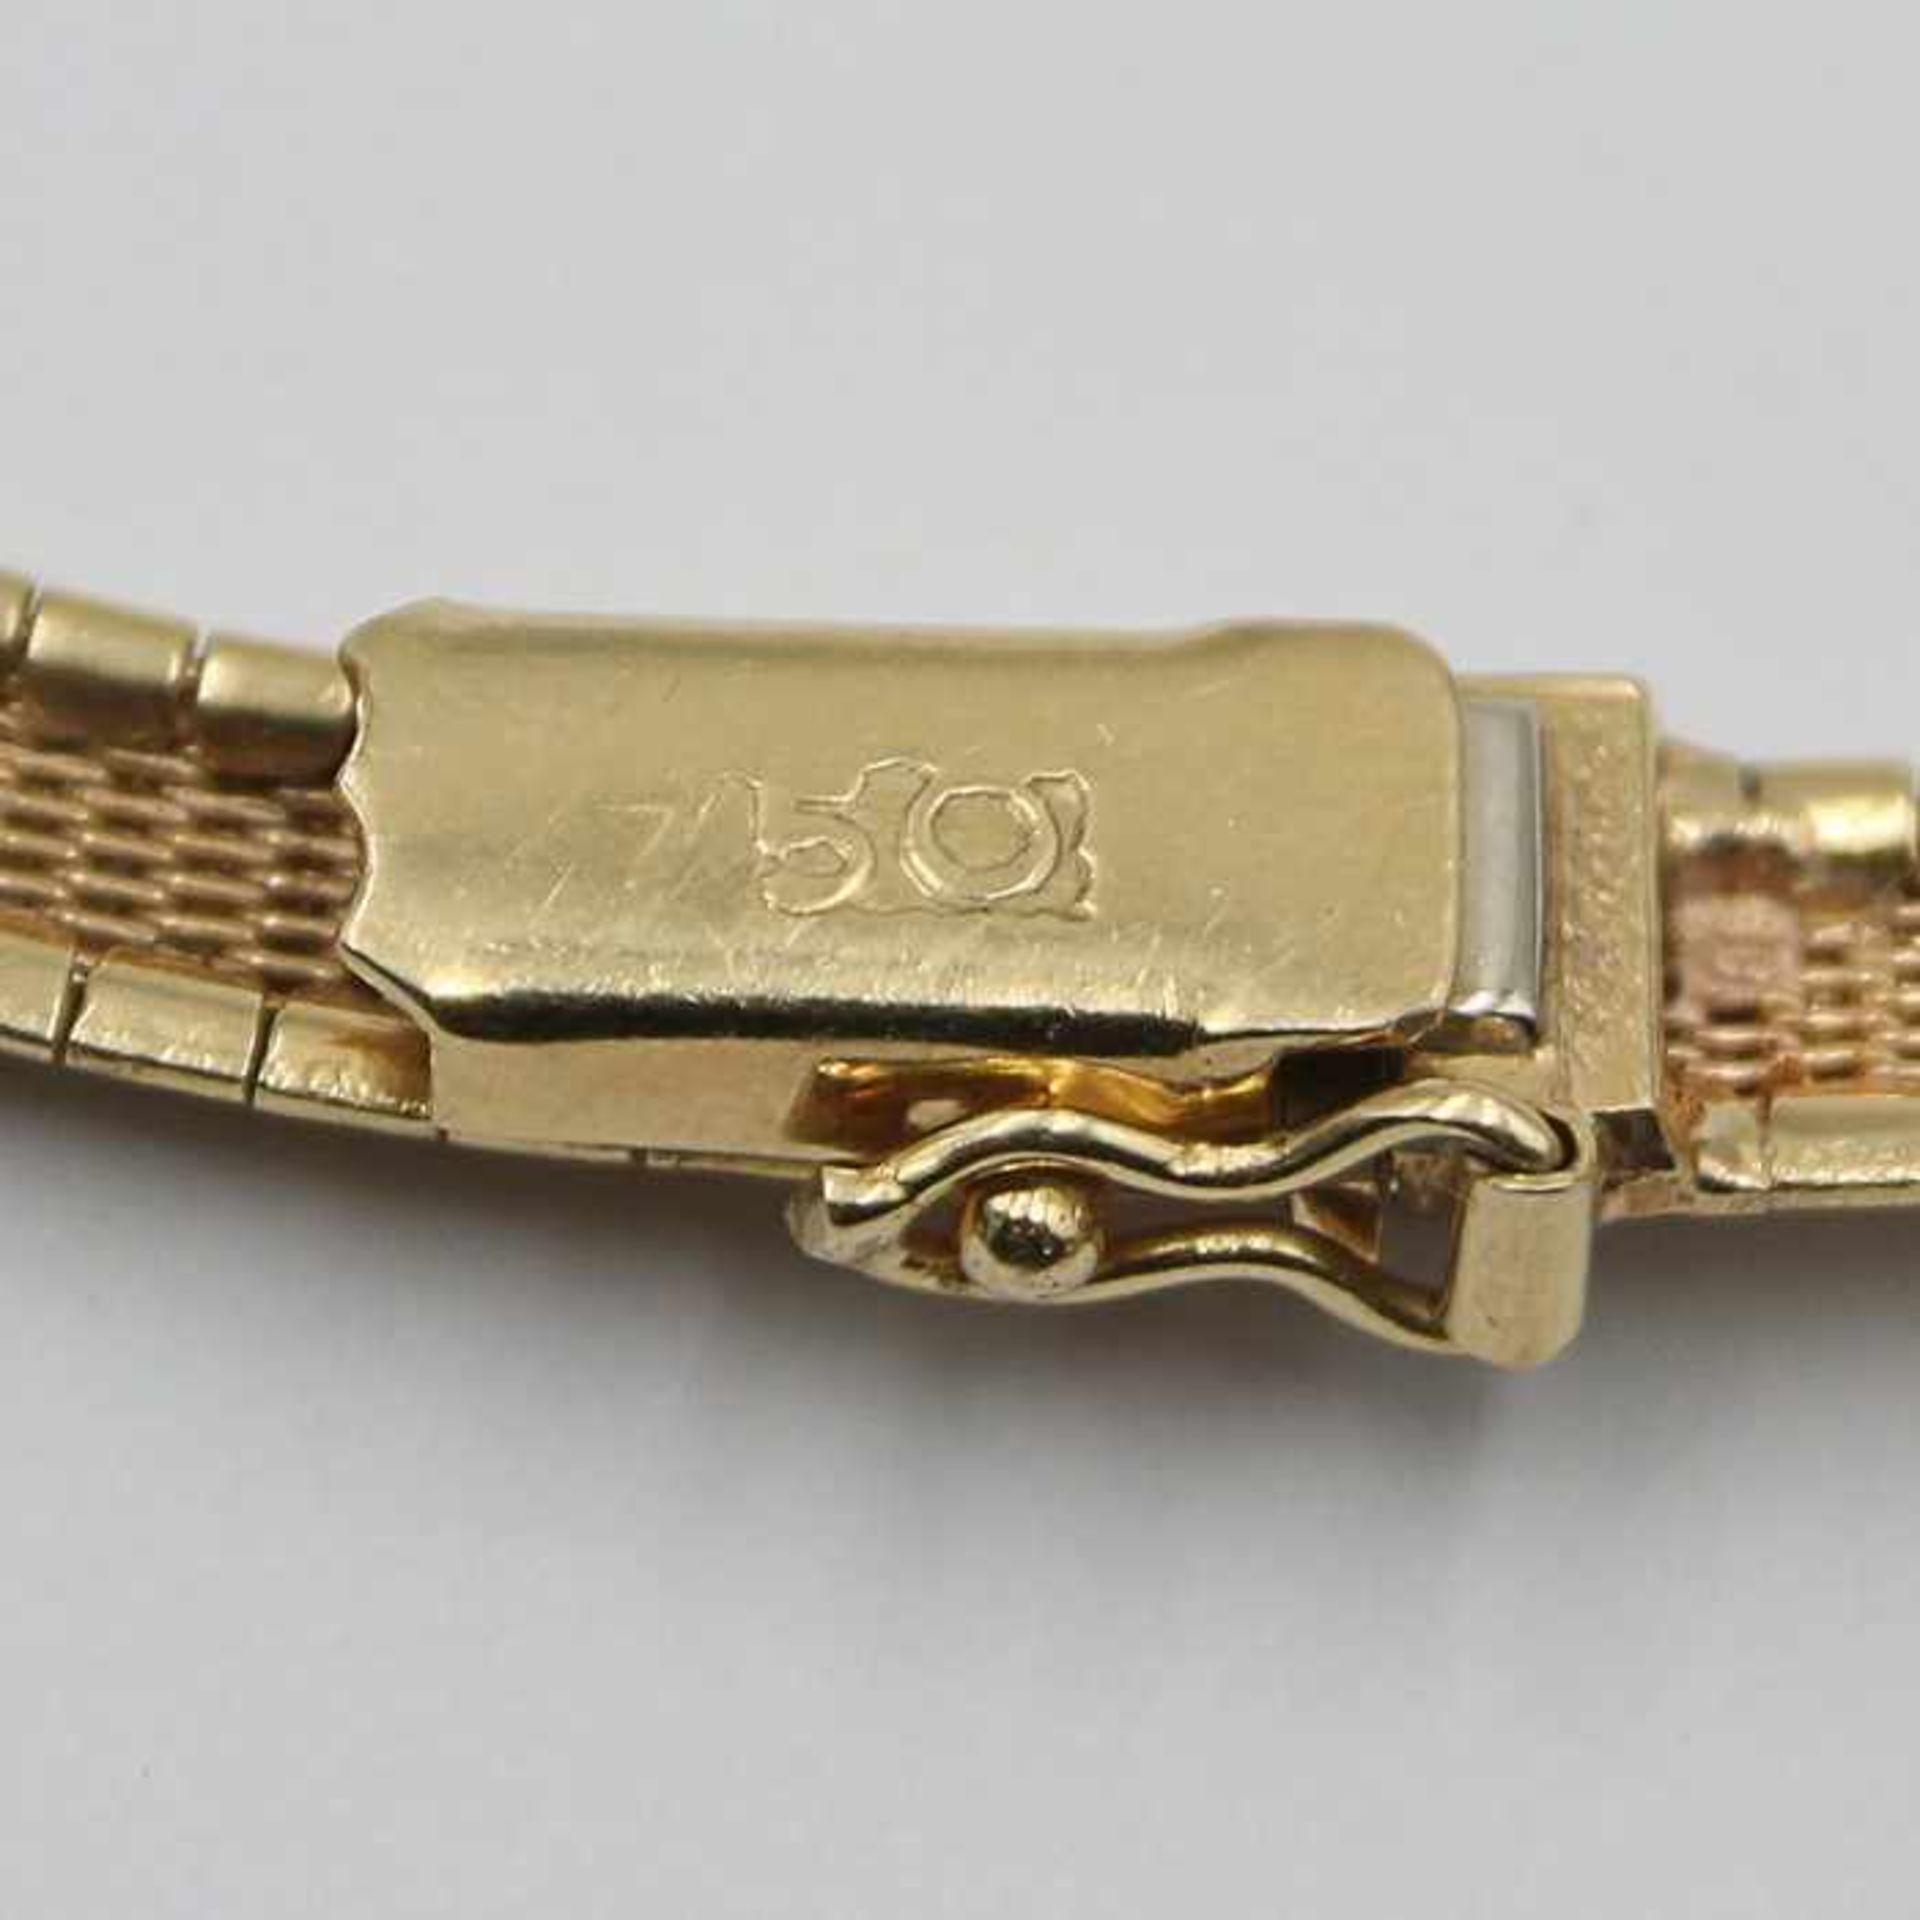 CollierGG 750, Bandform, gerundet, satiniert u. mit diamantiertem Dekor, verdeckte Kastenschließe, - Bild 3 aus 4